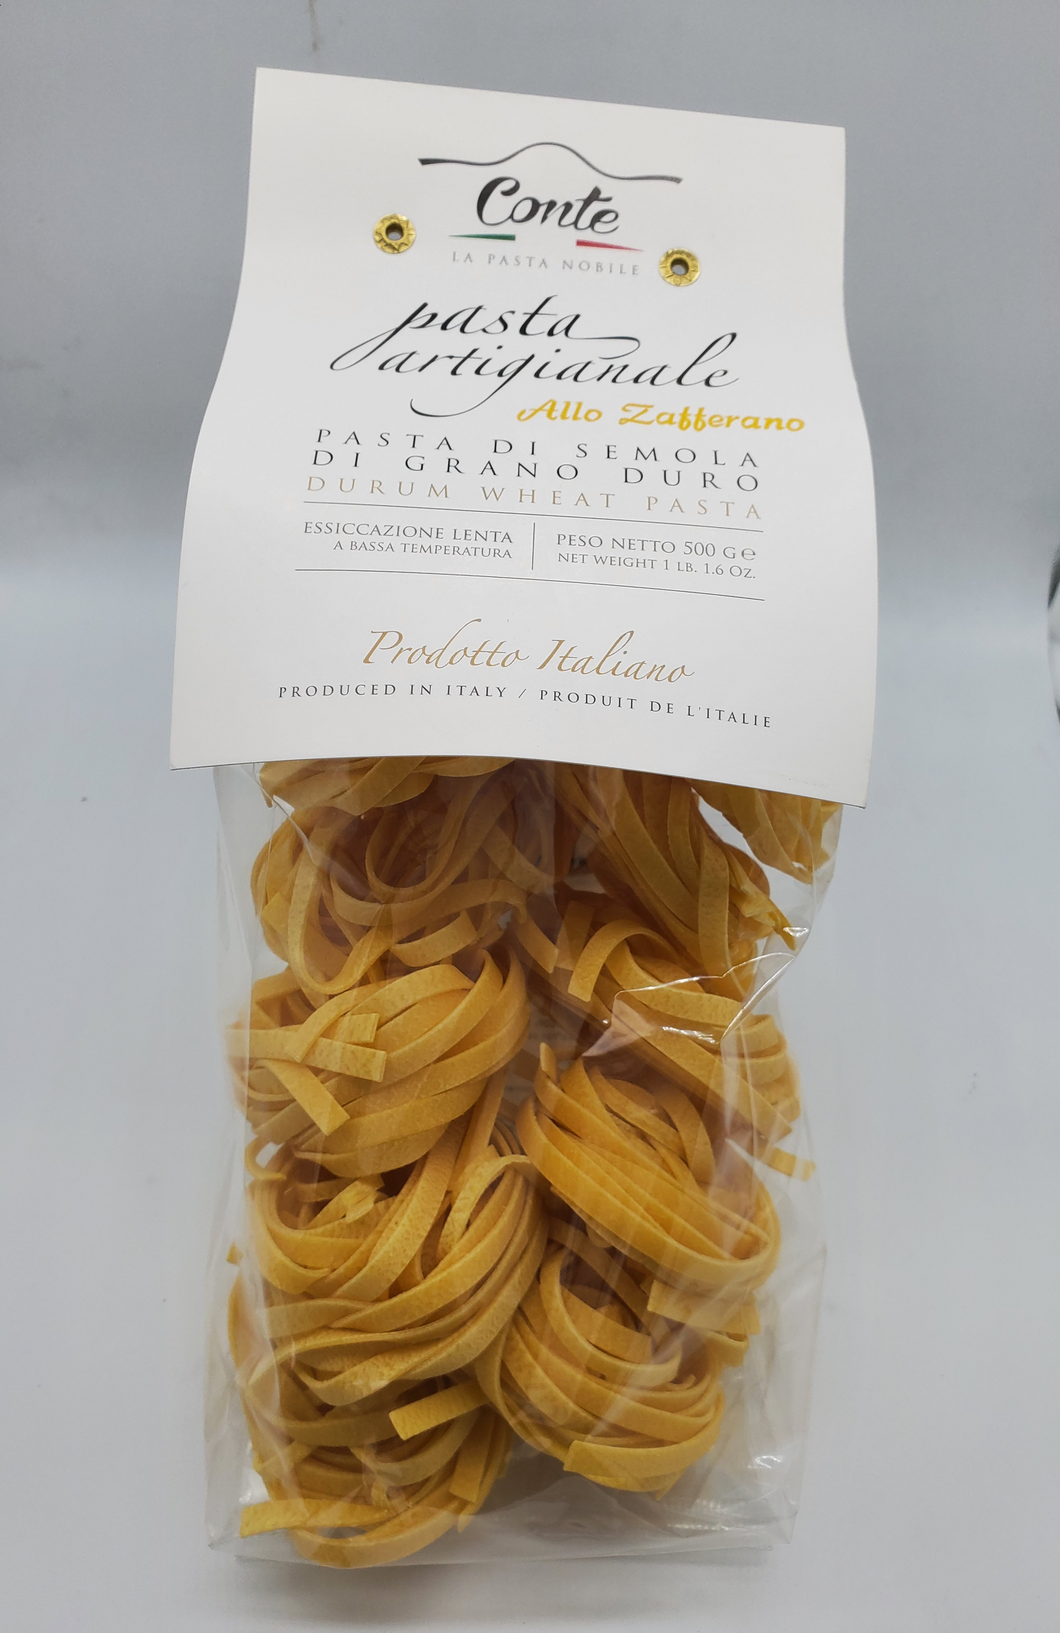 Pastificio Conte Artisanal Saffon Tagliatelle Pasta 100% Durum Wheat Pasta - 500 gr